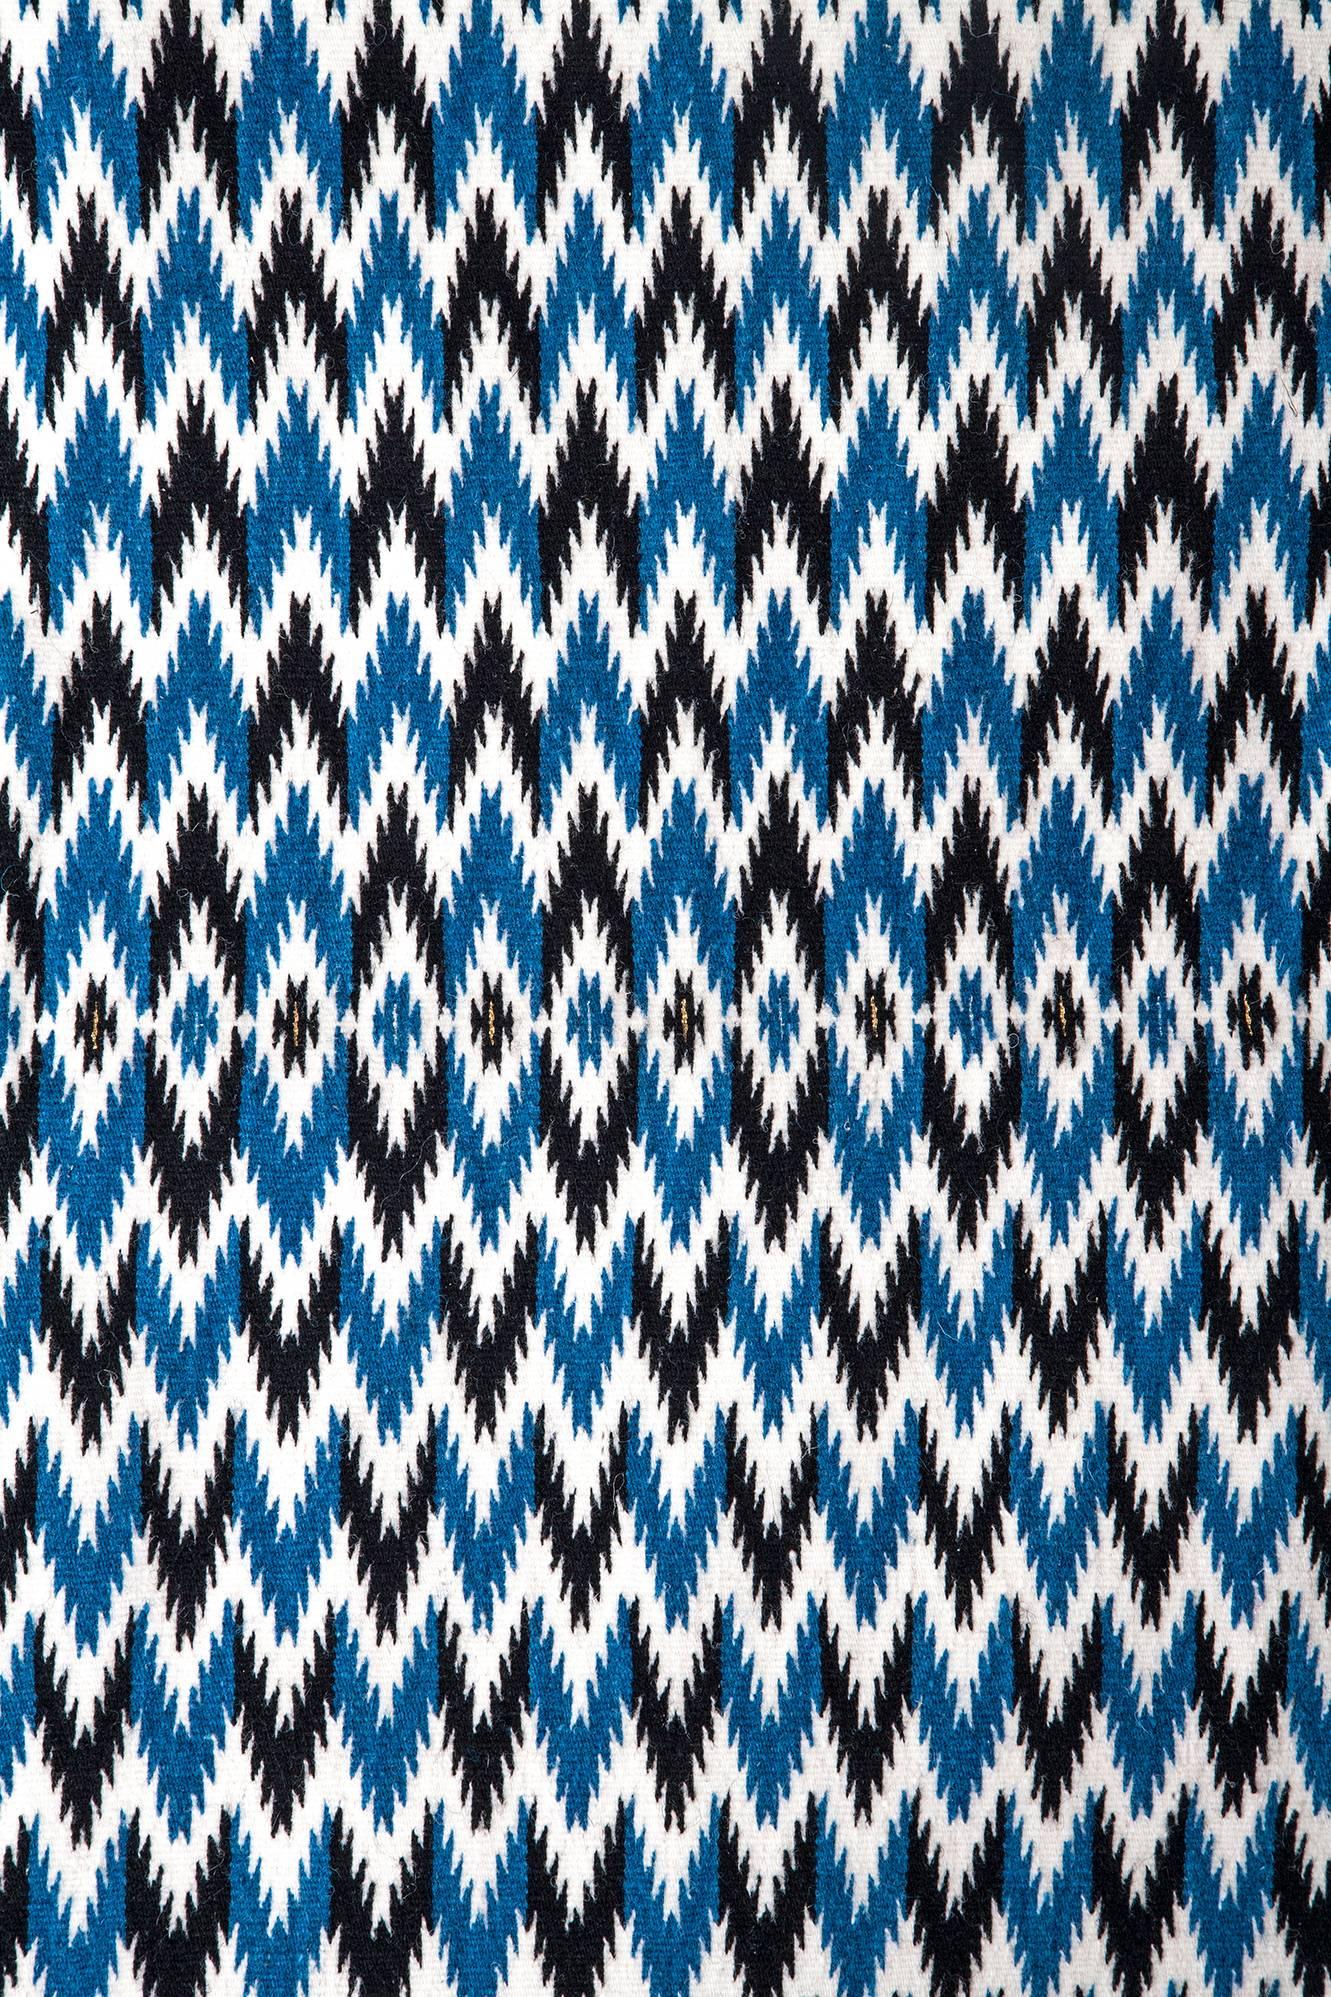 Sarape de Saltillo Azul / Textiles Mexican Folk Art Serape 4